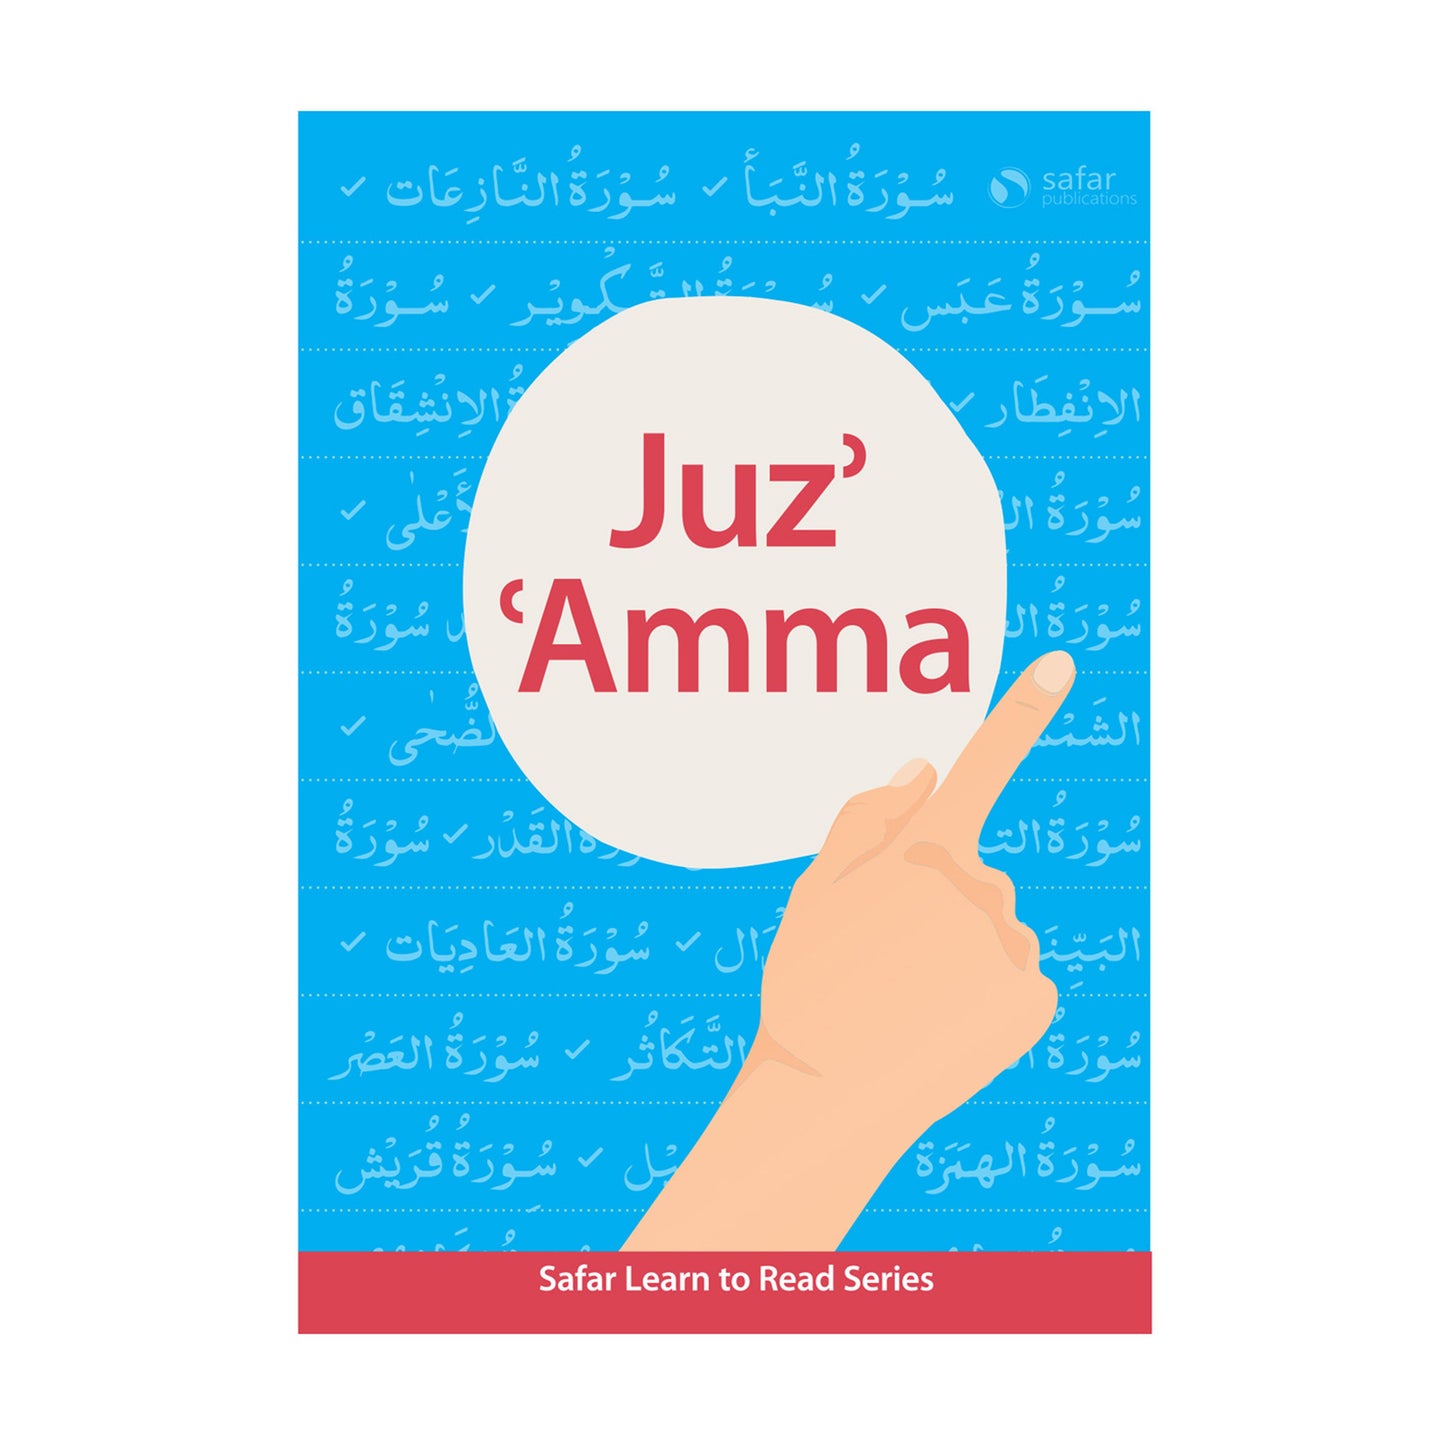 Juzz Amma